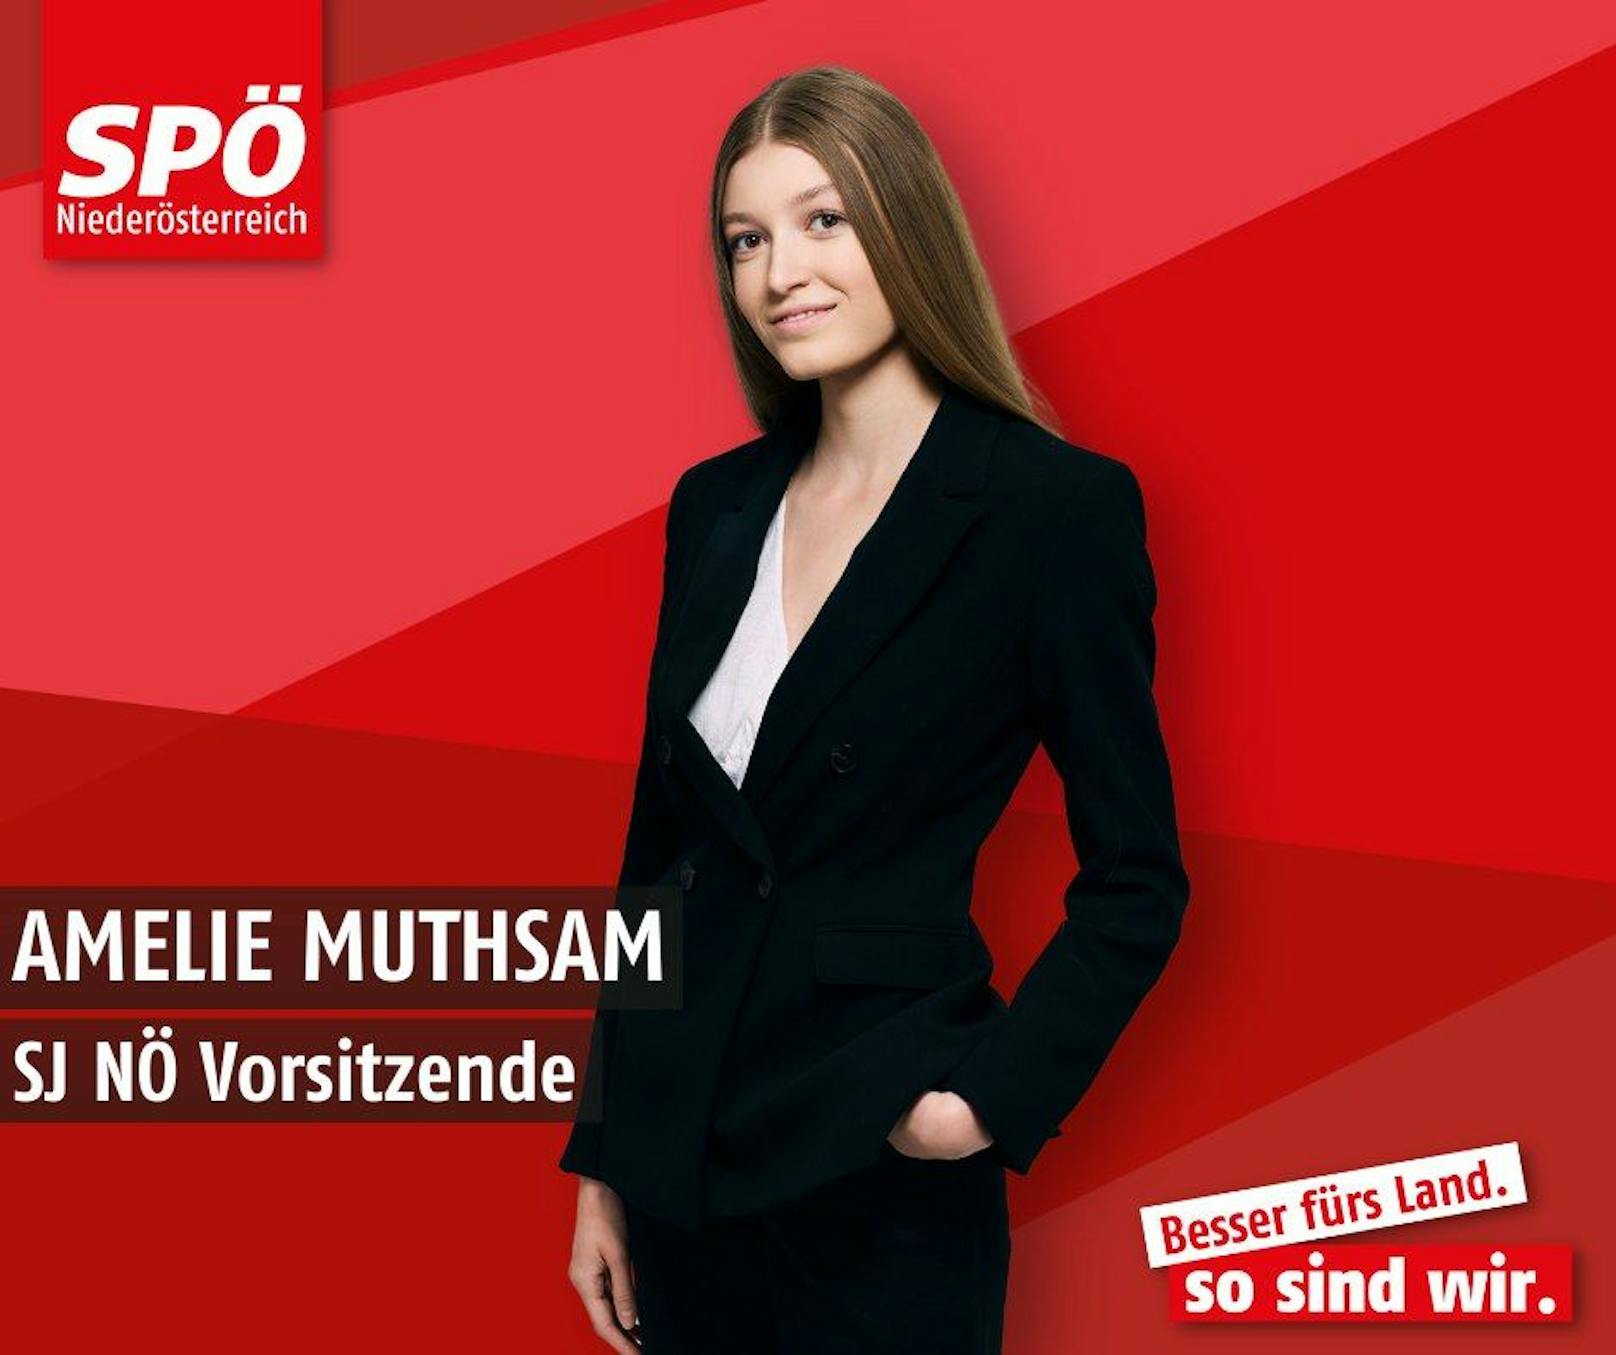 Amelie Muthsam, die jüngste Kandidatin auf der Landesliste der SPÖ bei der Landtagswahl hat große Ziele.